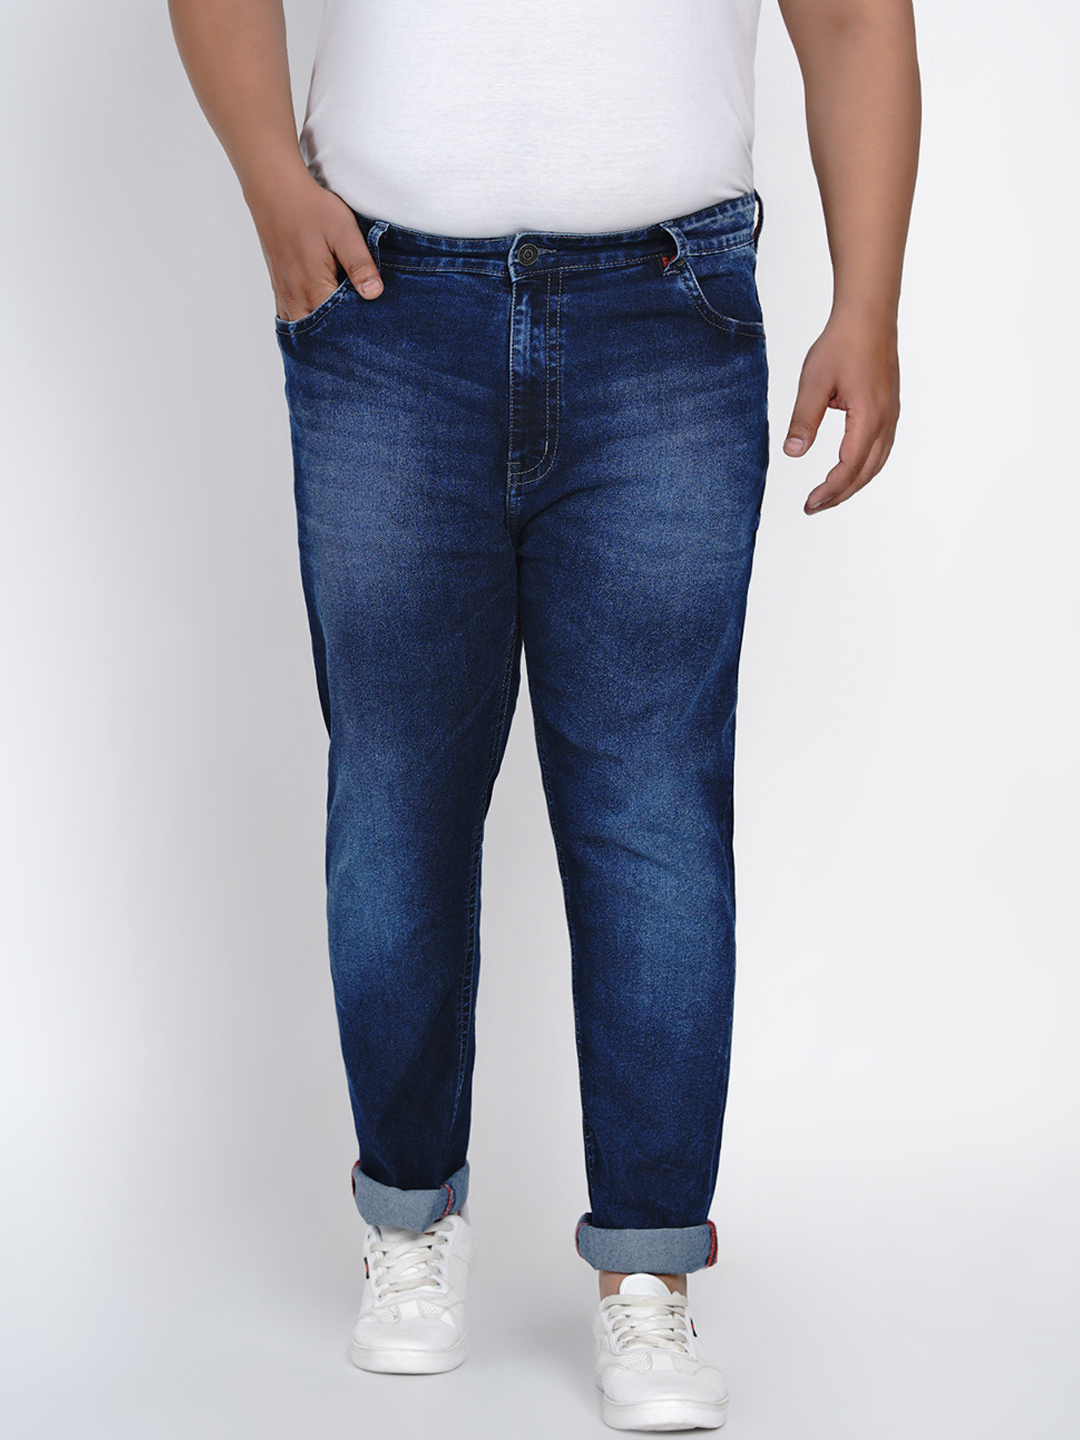 affordables/jeans/JPJ2011/jpj2011-2.jpg